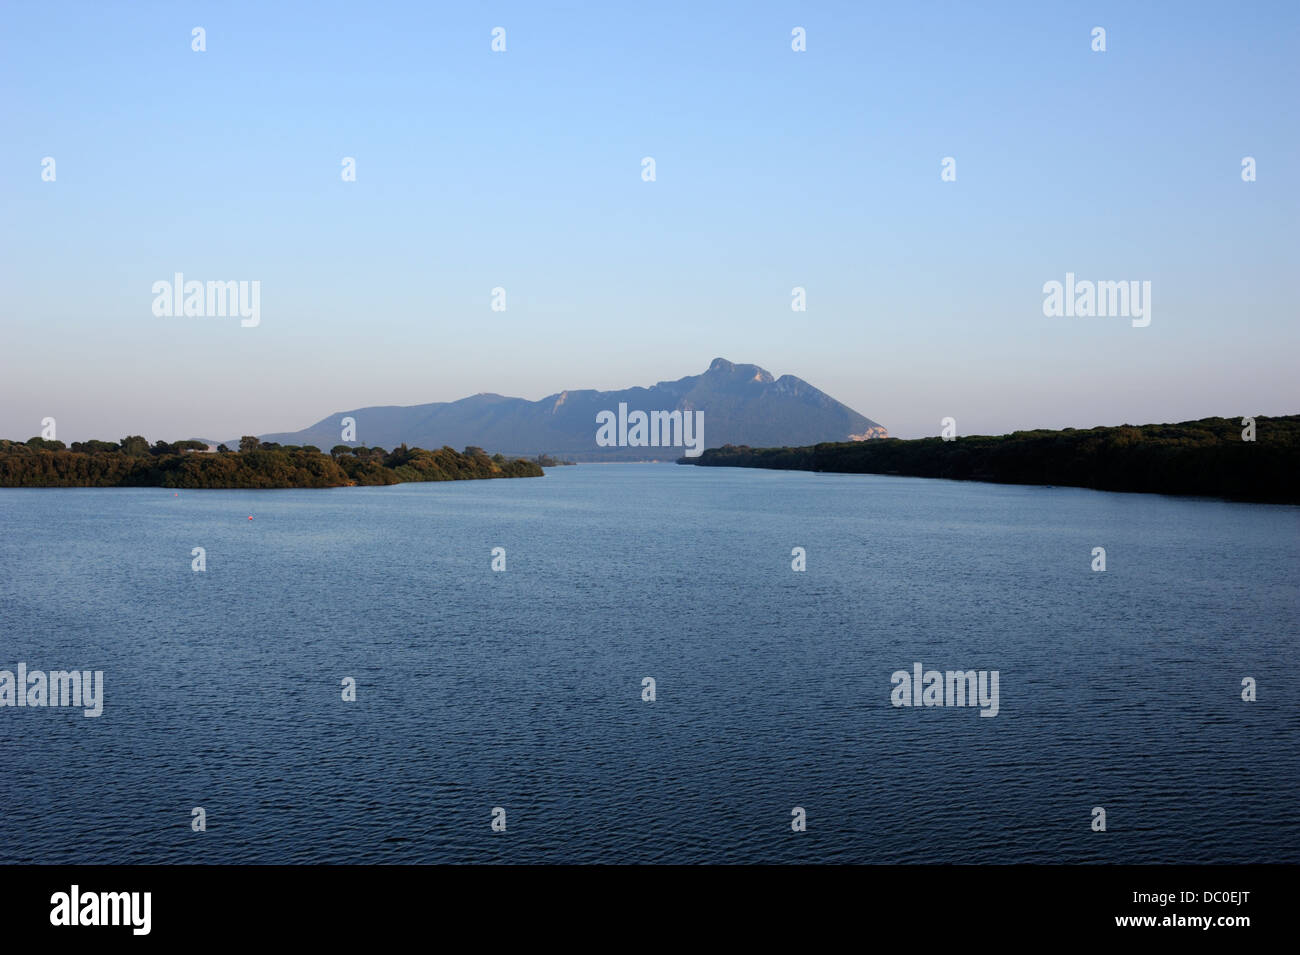 italy, lazio, circeo national park, mount circeo and sabaudia lake at sunset Stock Photo